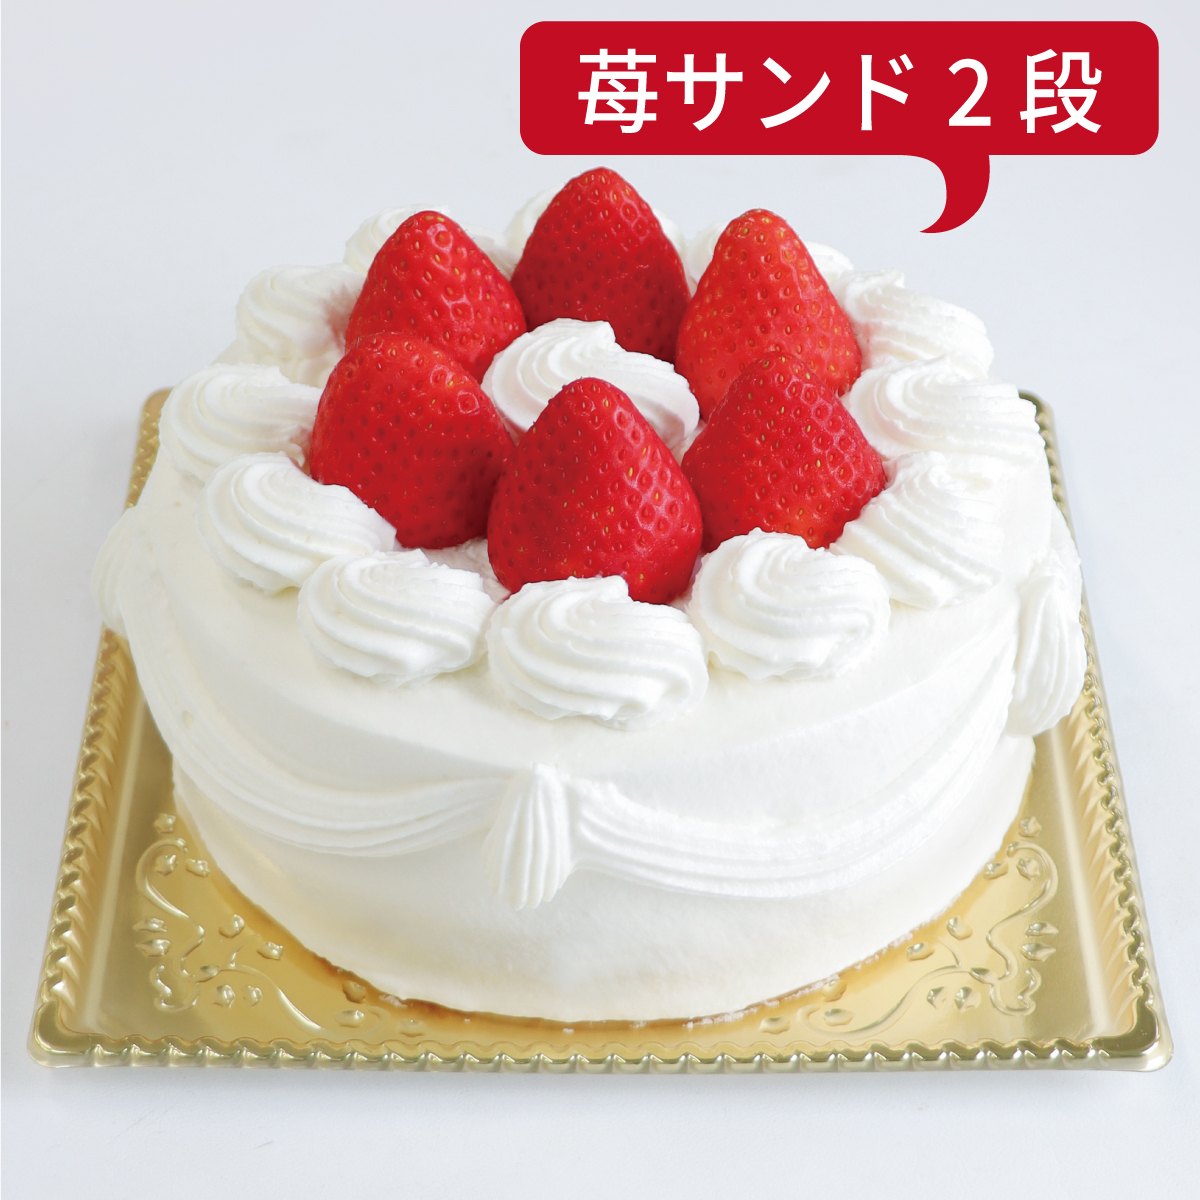 【ダブル】いちごデコレーションケーキ<21cm>